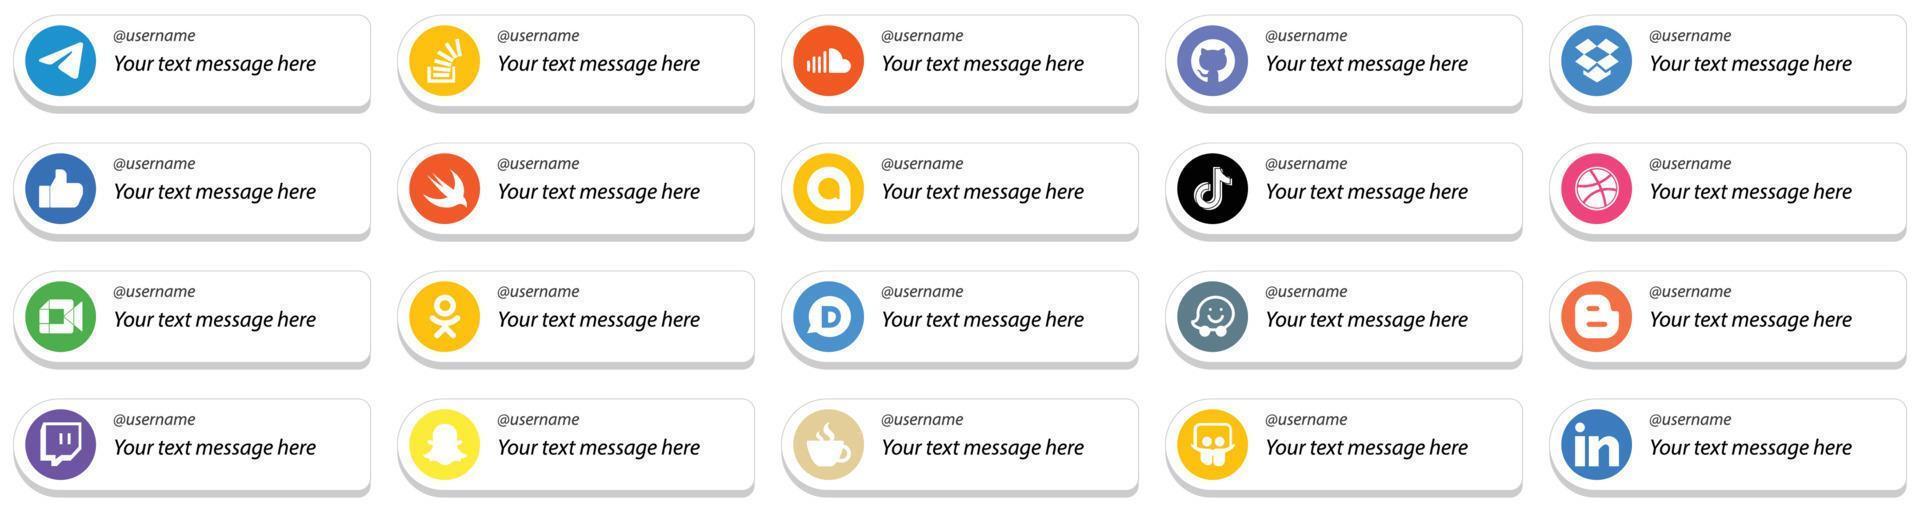 20 estilo de cartão siga-me ícones de plataforma de mídia social com opção de mensagem personalizada, como douyin. google allo. som. ícones rápidos e semelhantes. alta definição e versátil vetor